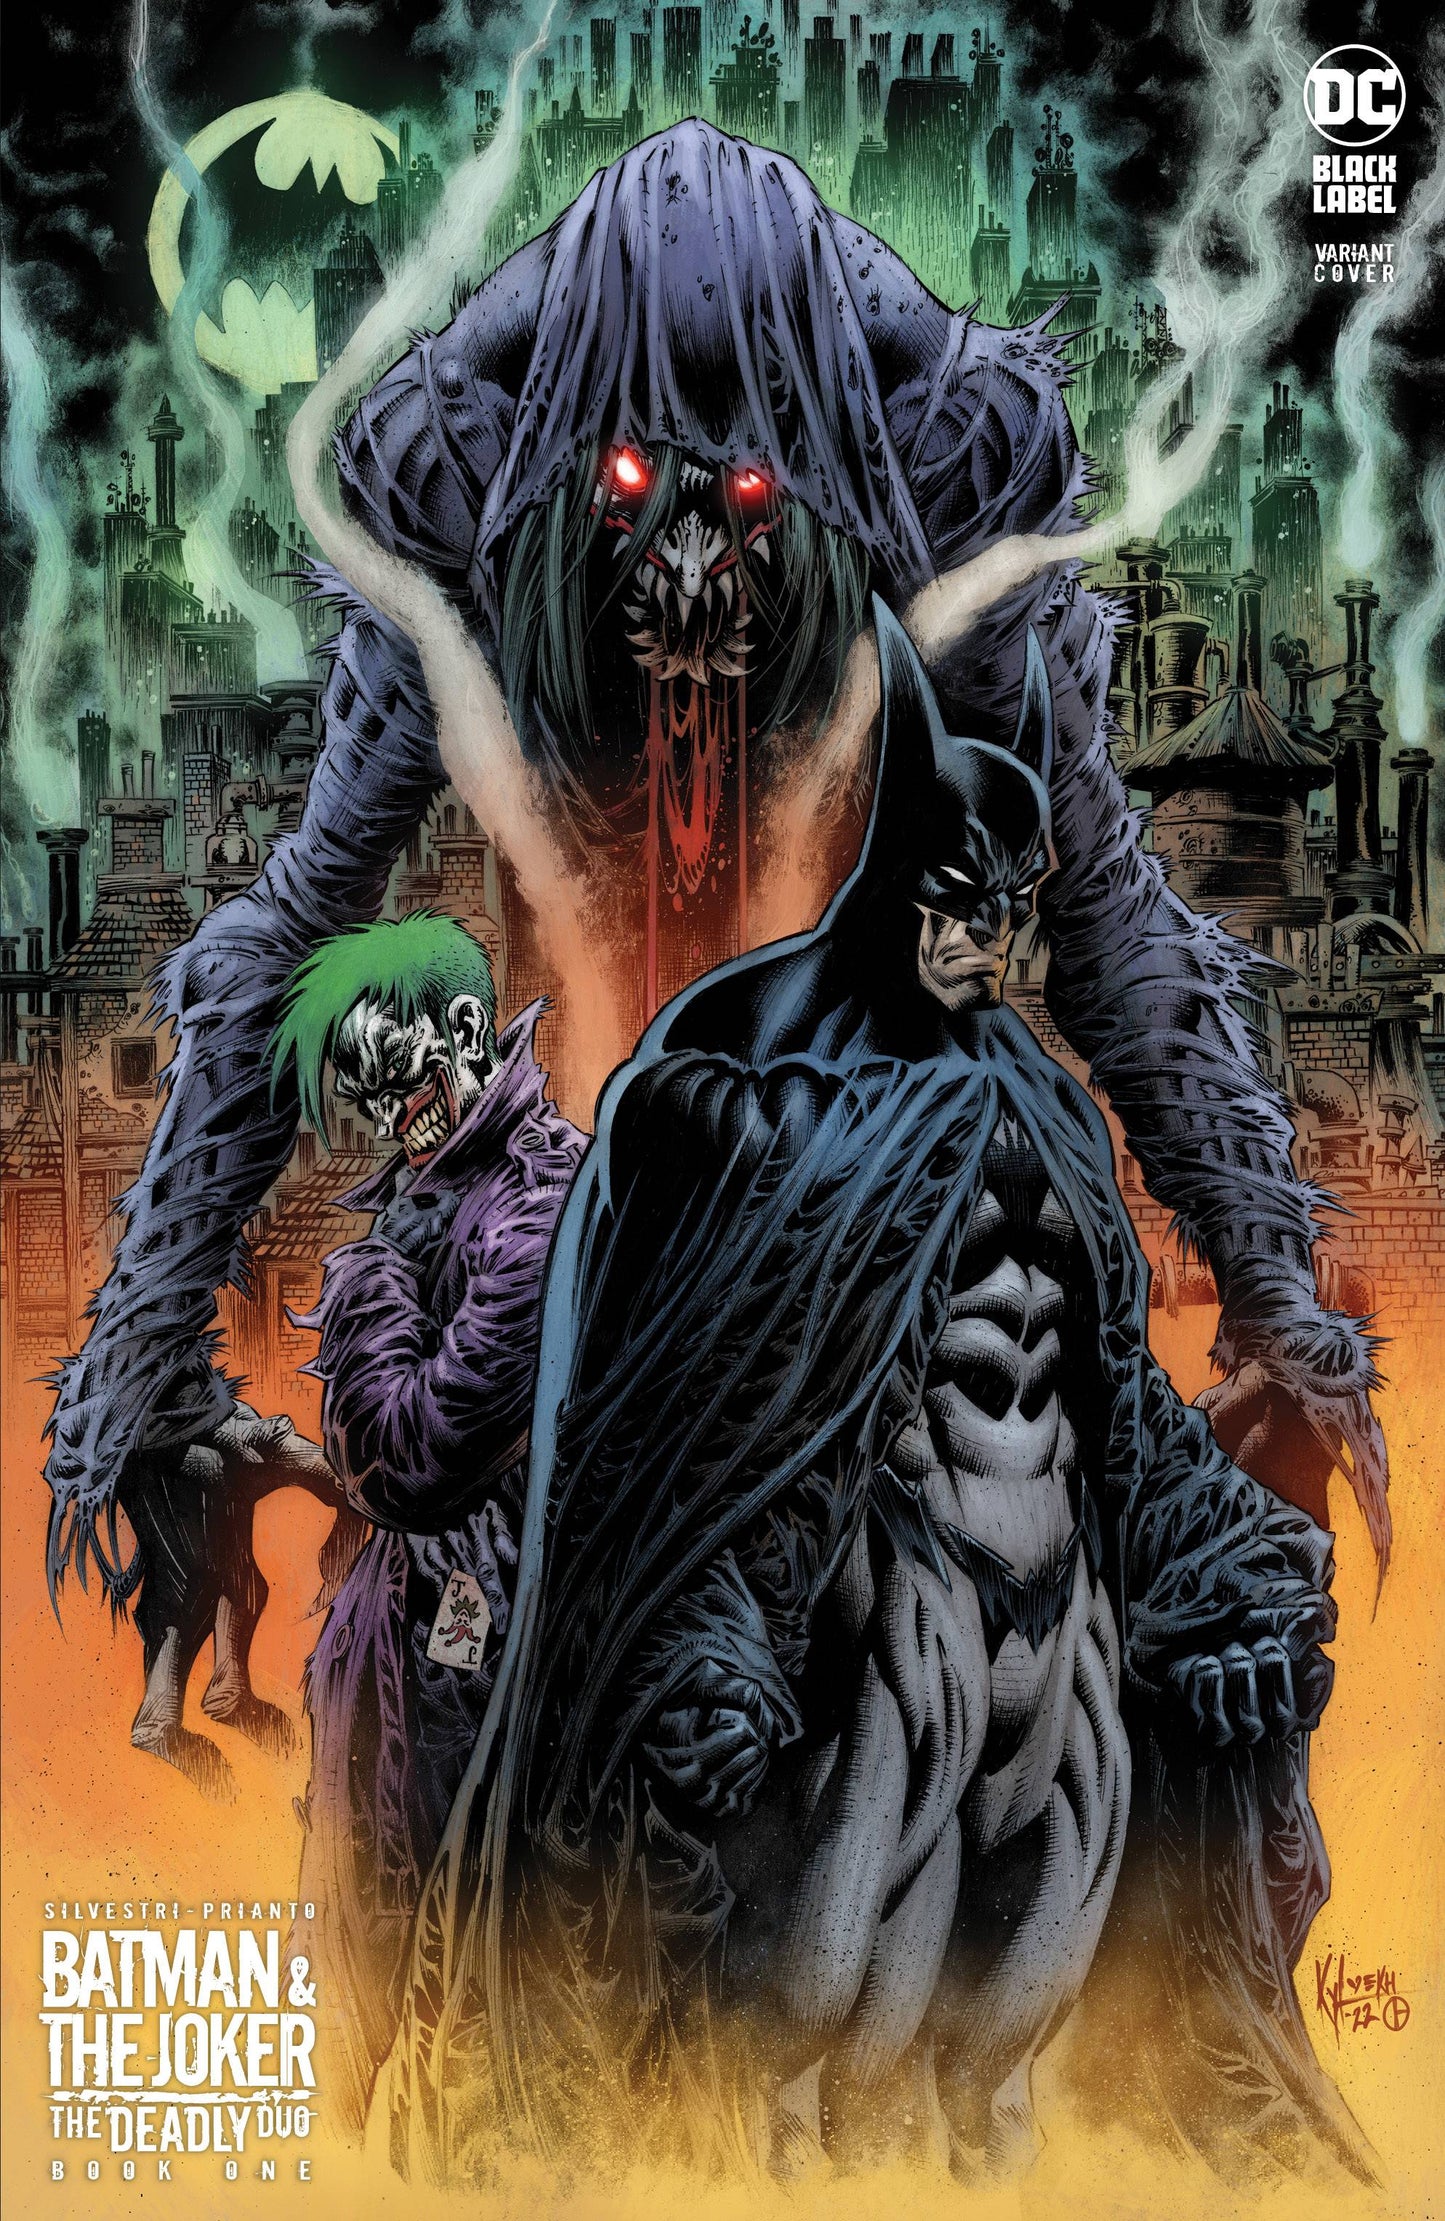 BATMAN & JOKER DEADLY DUO #1 (OF 7)